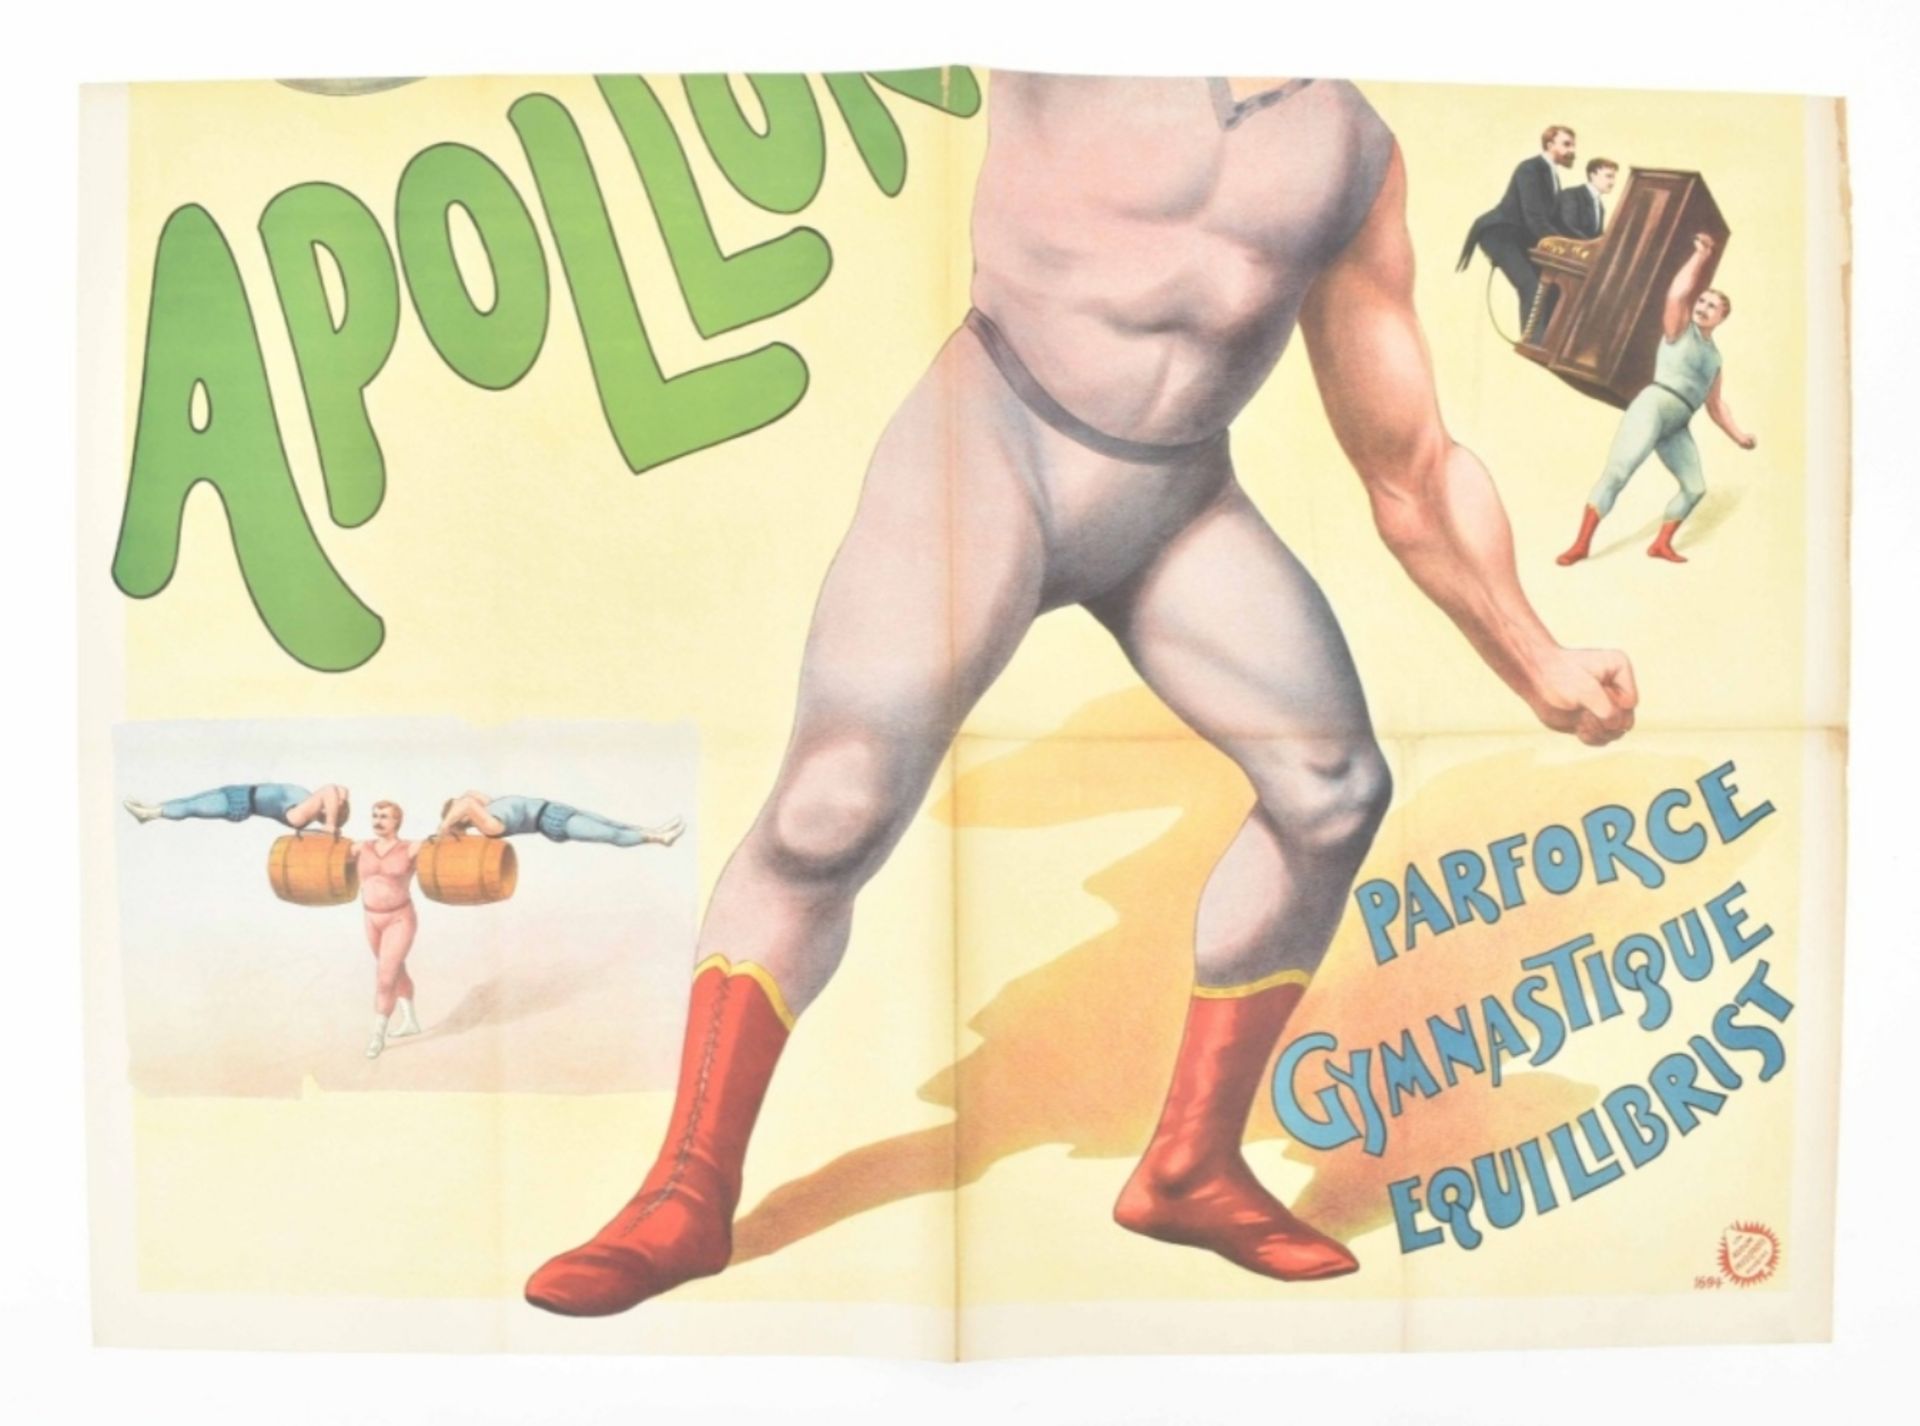 [Freakshow ] [Strongmen] Apollon Parforce gymnastique equilibrist. Friedländer, Hamburg, 1900 - Image 2 of 5